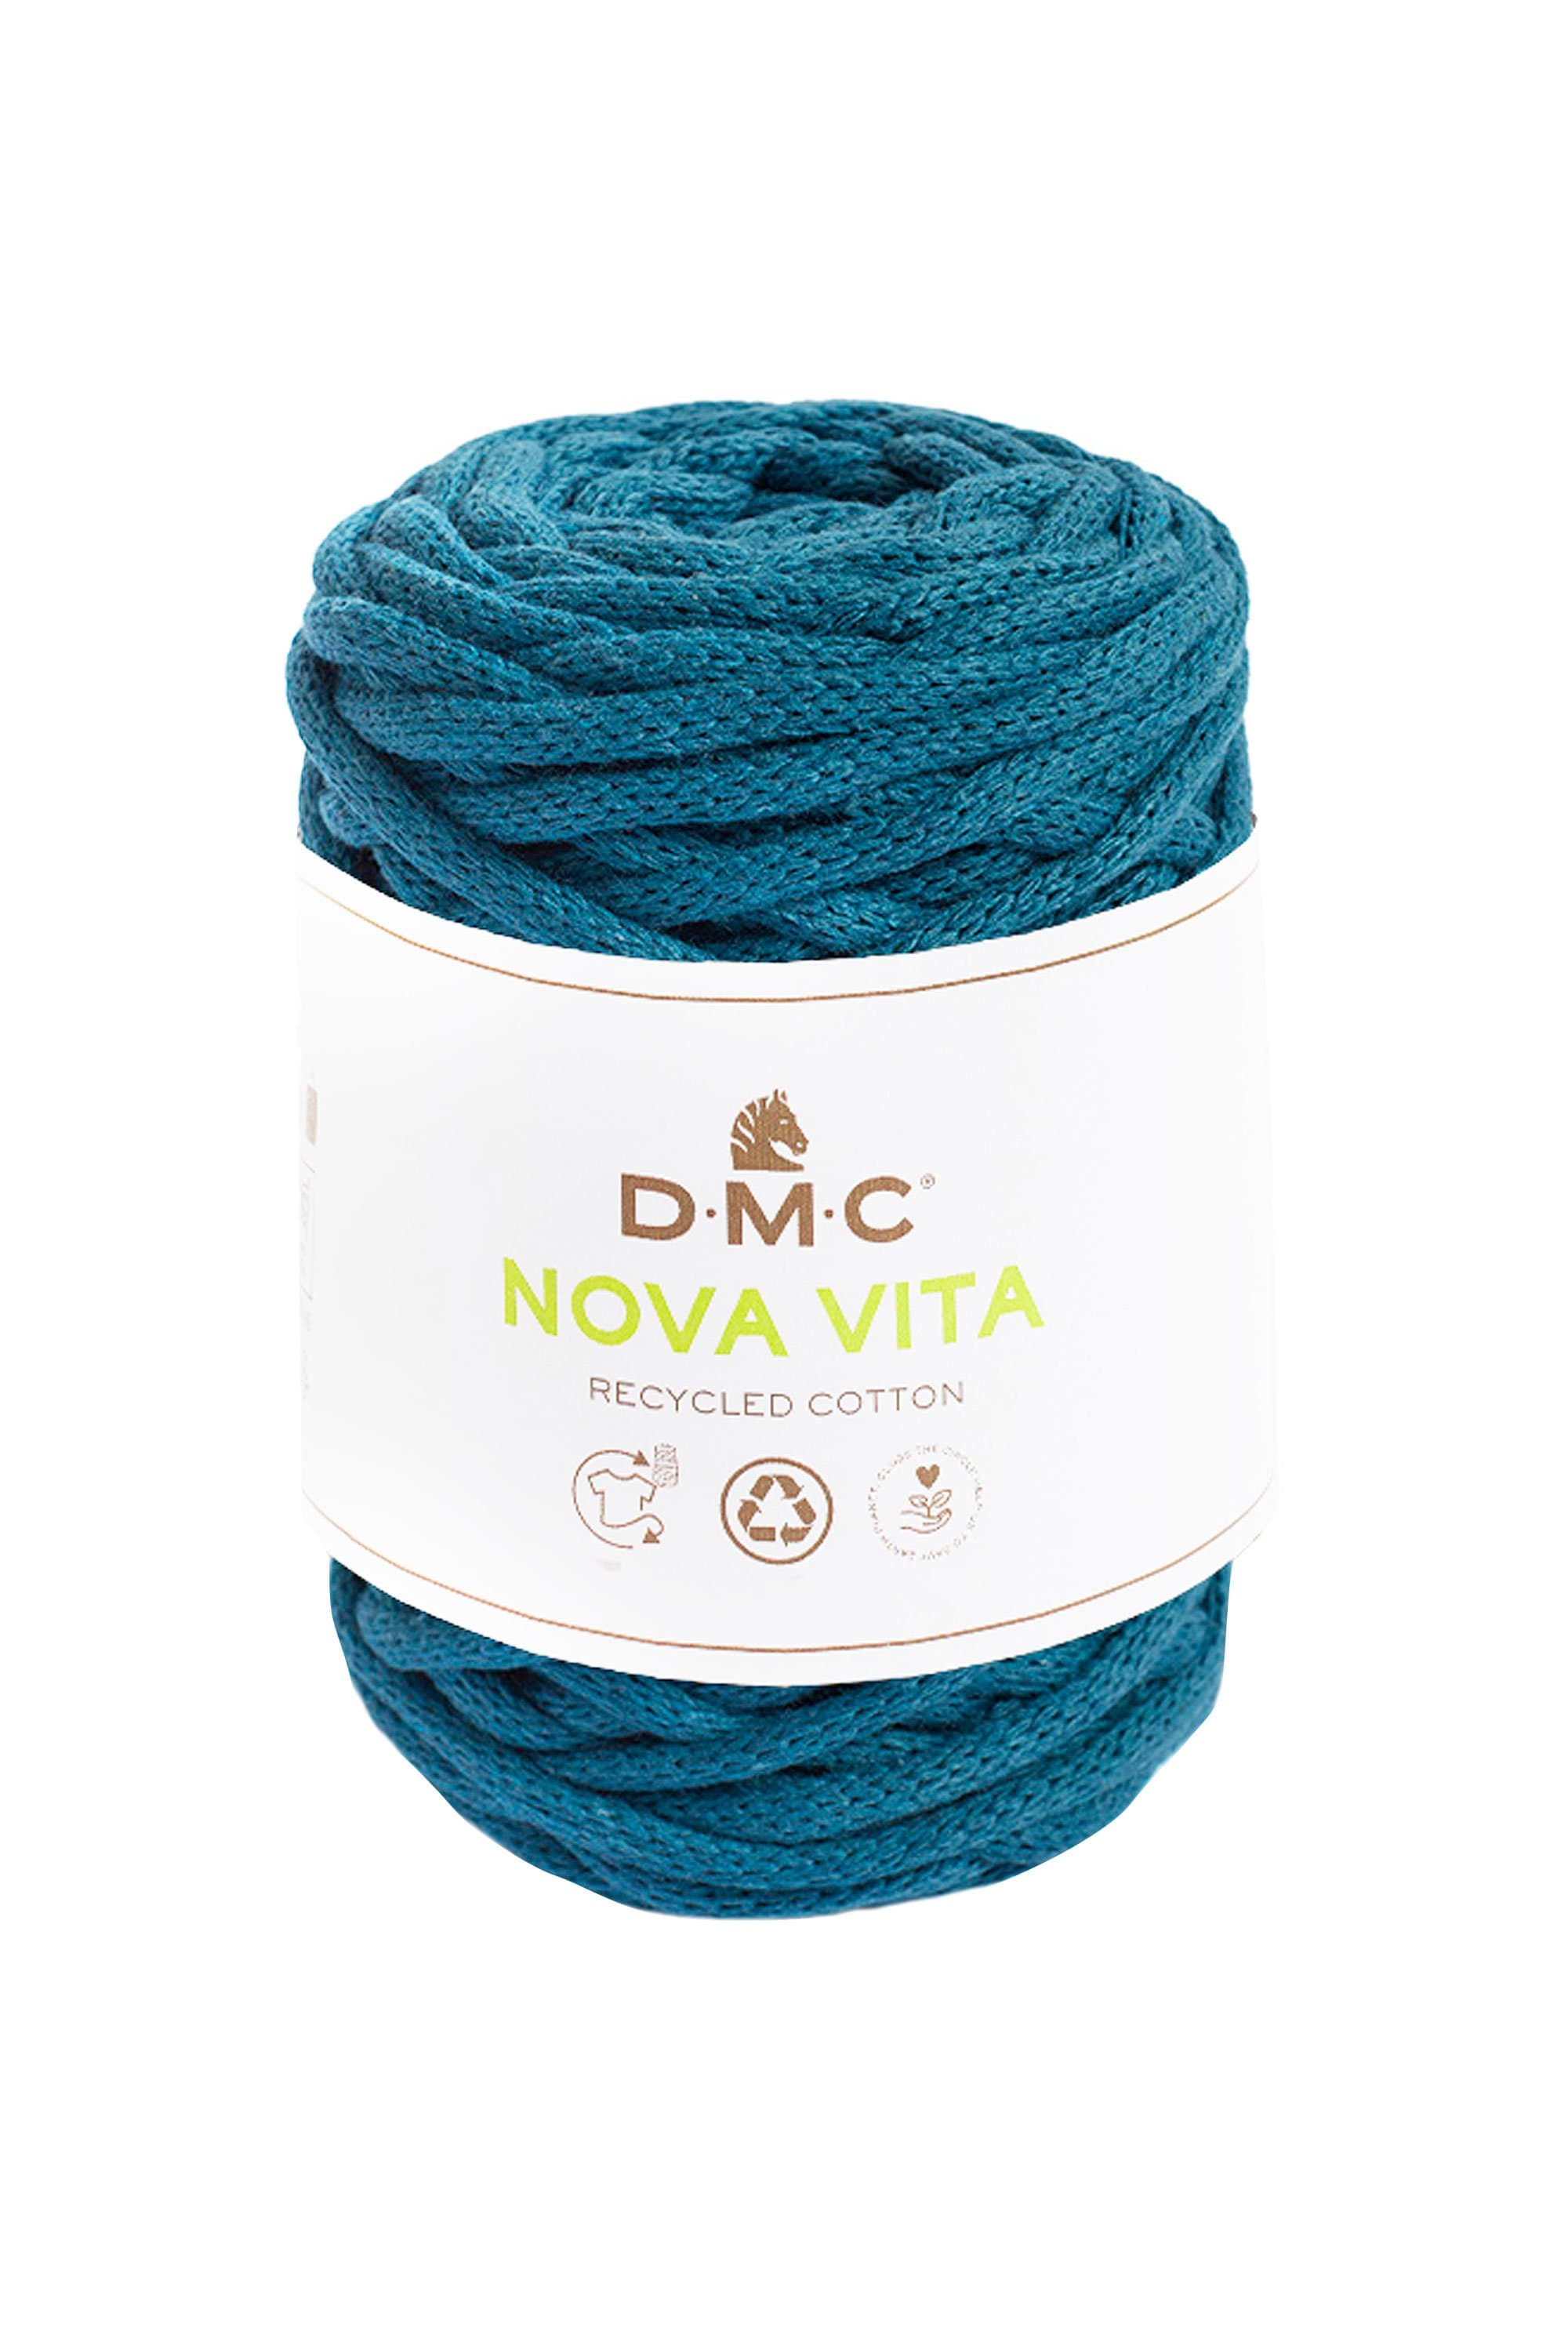 DMC Yarn 73 DMC Nova Vita